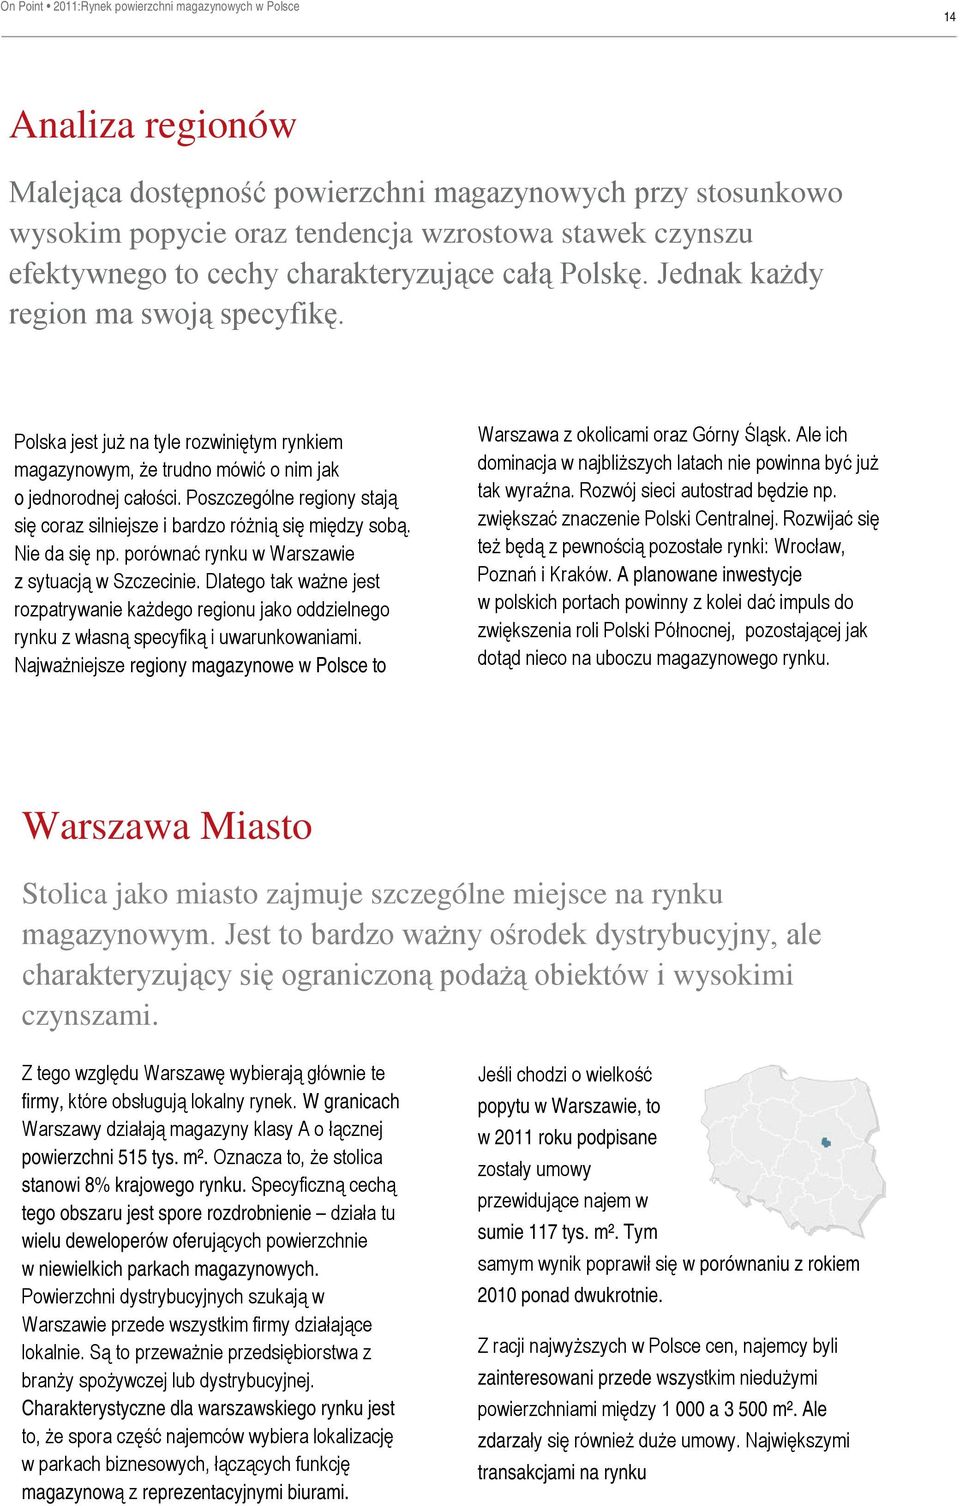 Poszczególne regiony stają się coraz silniejsze i bardzo różnią się między sobą. Nie da się np. porównać rynku w Warszawie z sytuacją w Szczecinie.